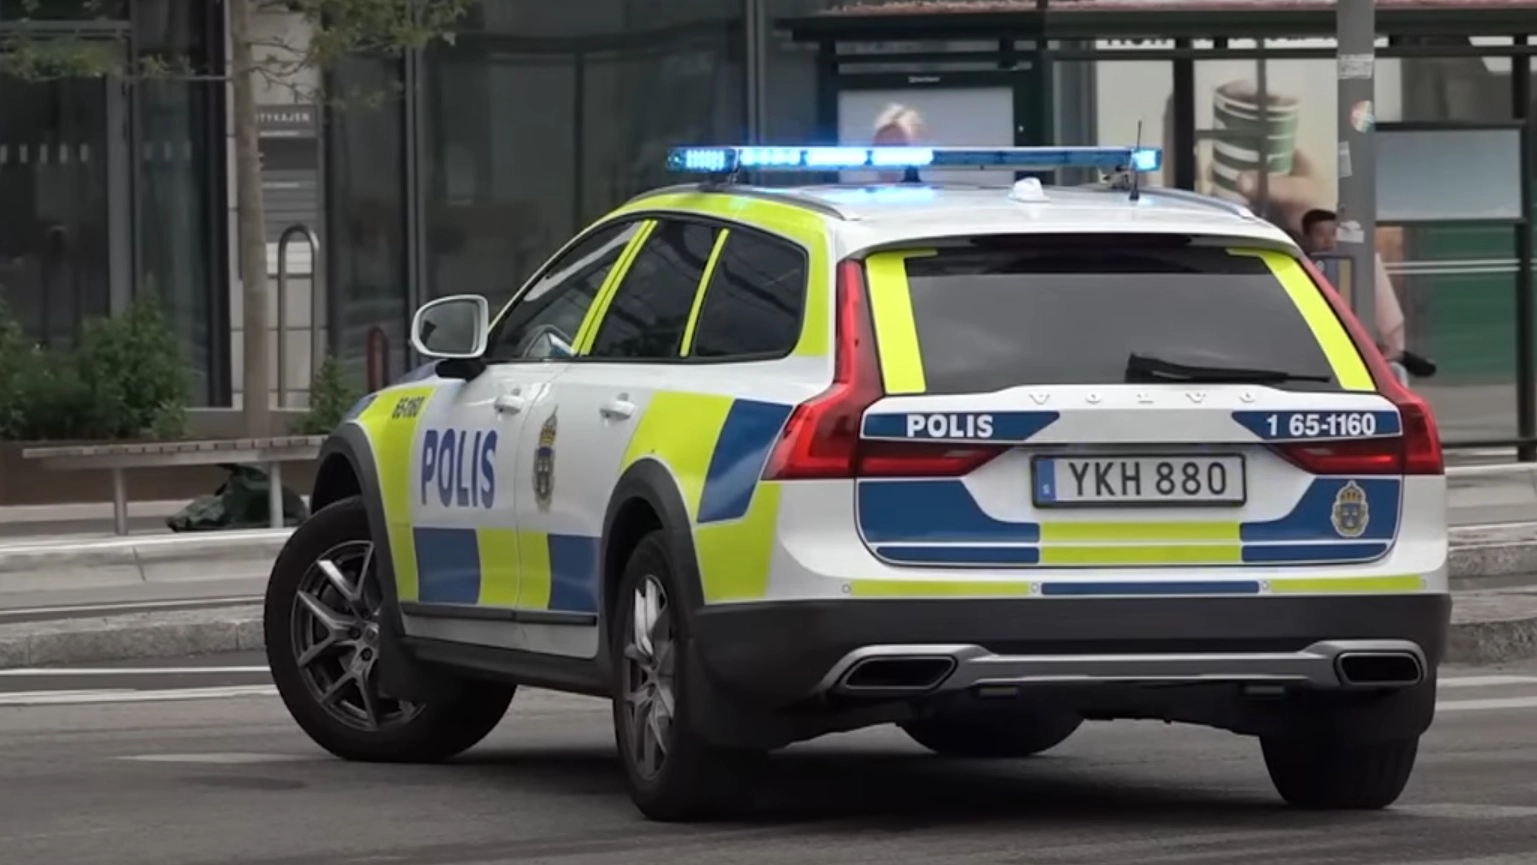 L’uomo è stato fermato dalla polizia a Stoccolma: aveva un tasso alcolemico molto oltre il limite. Condannato a mese di cella